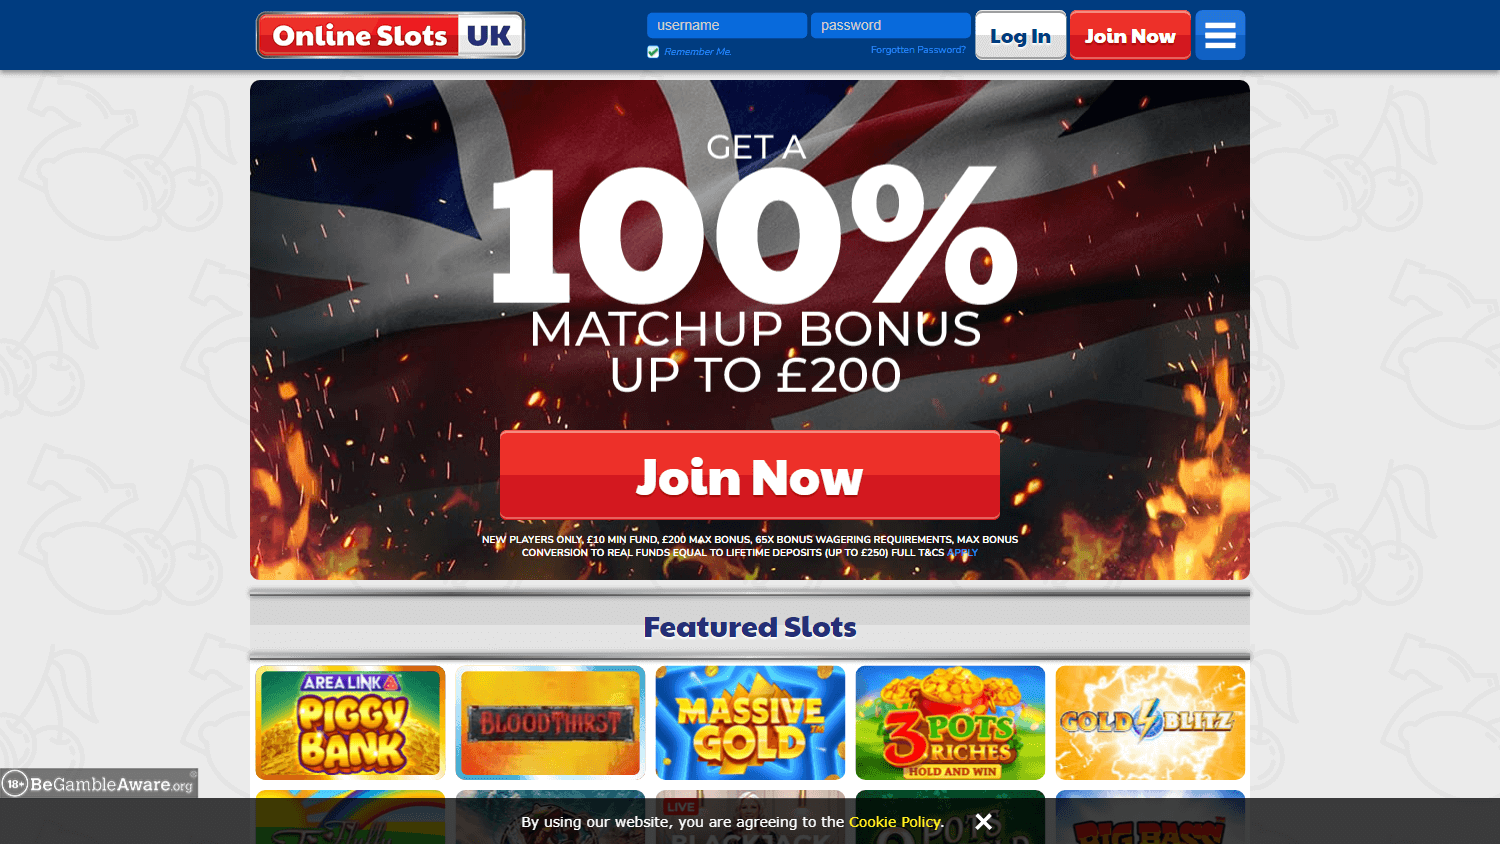 online_slots_uk_casino_homepage_desktop